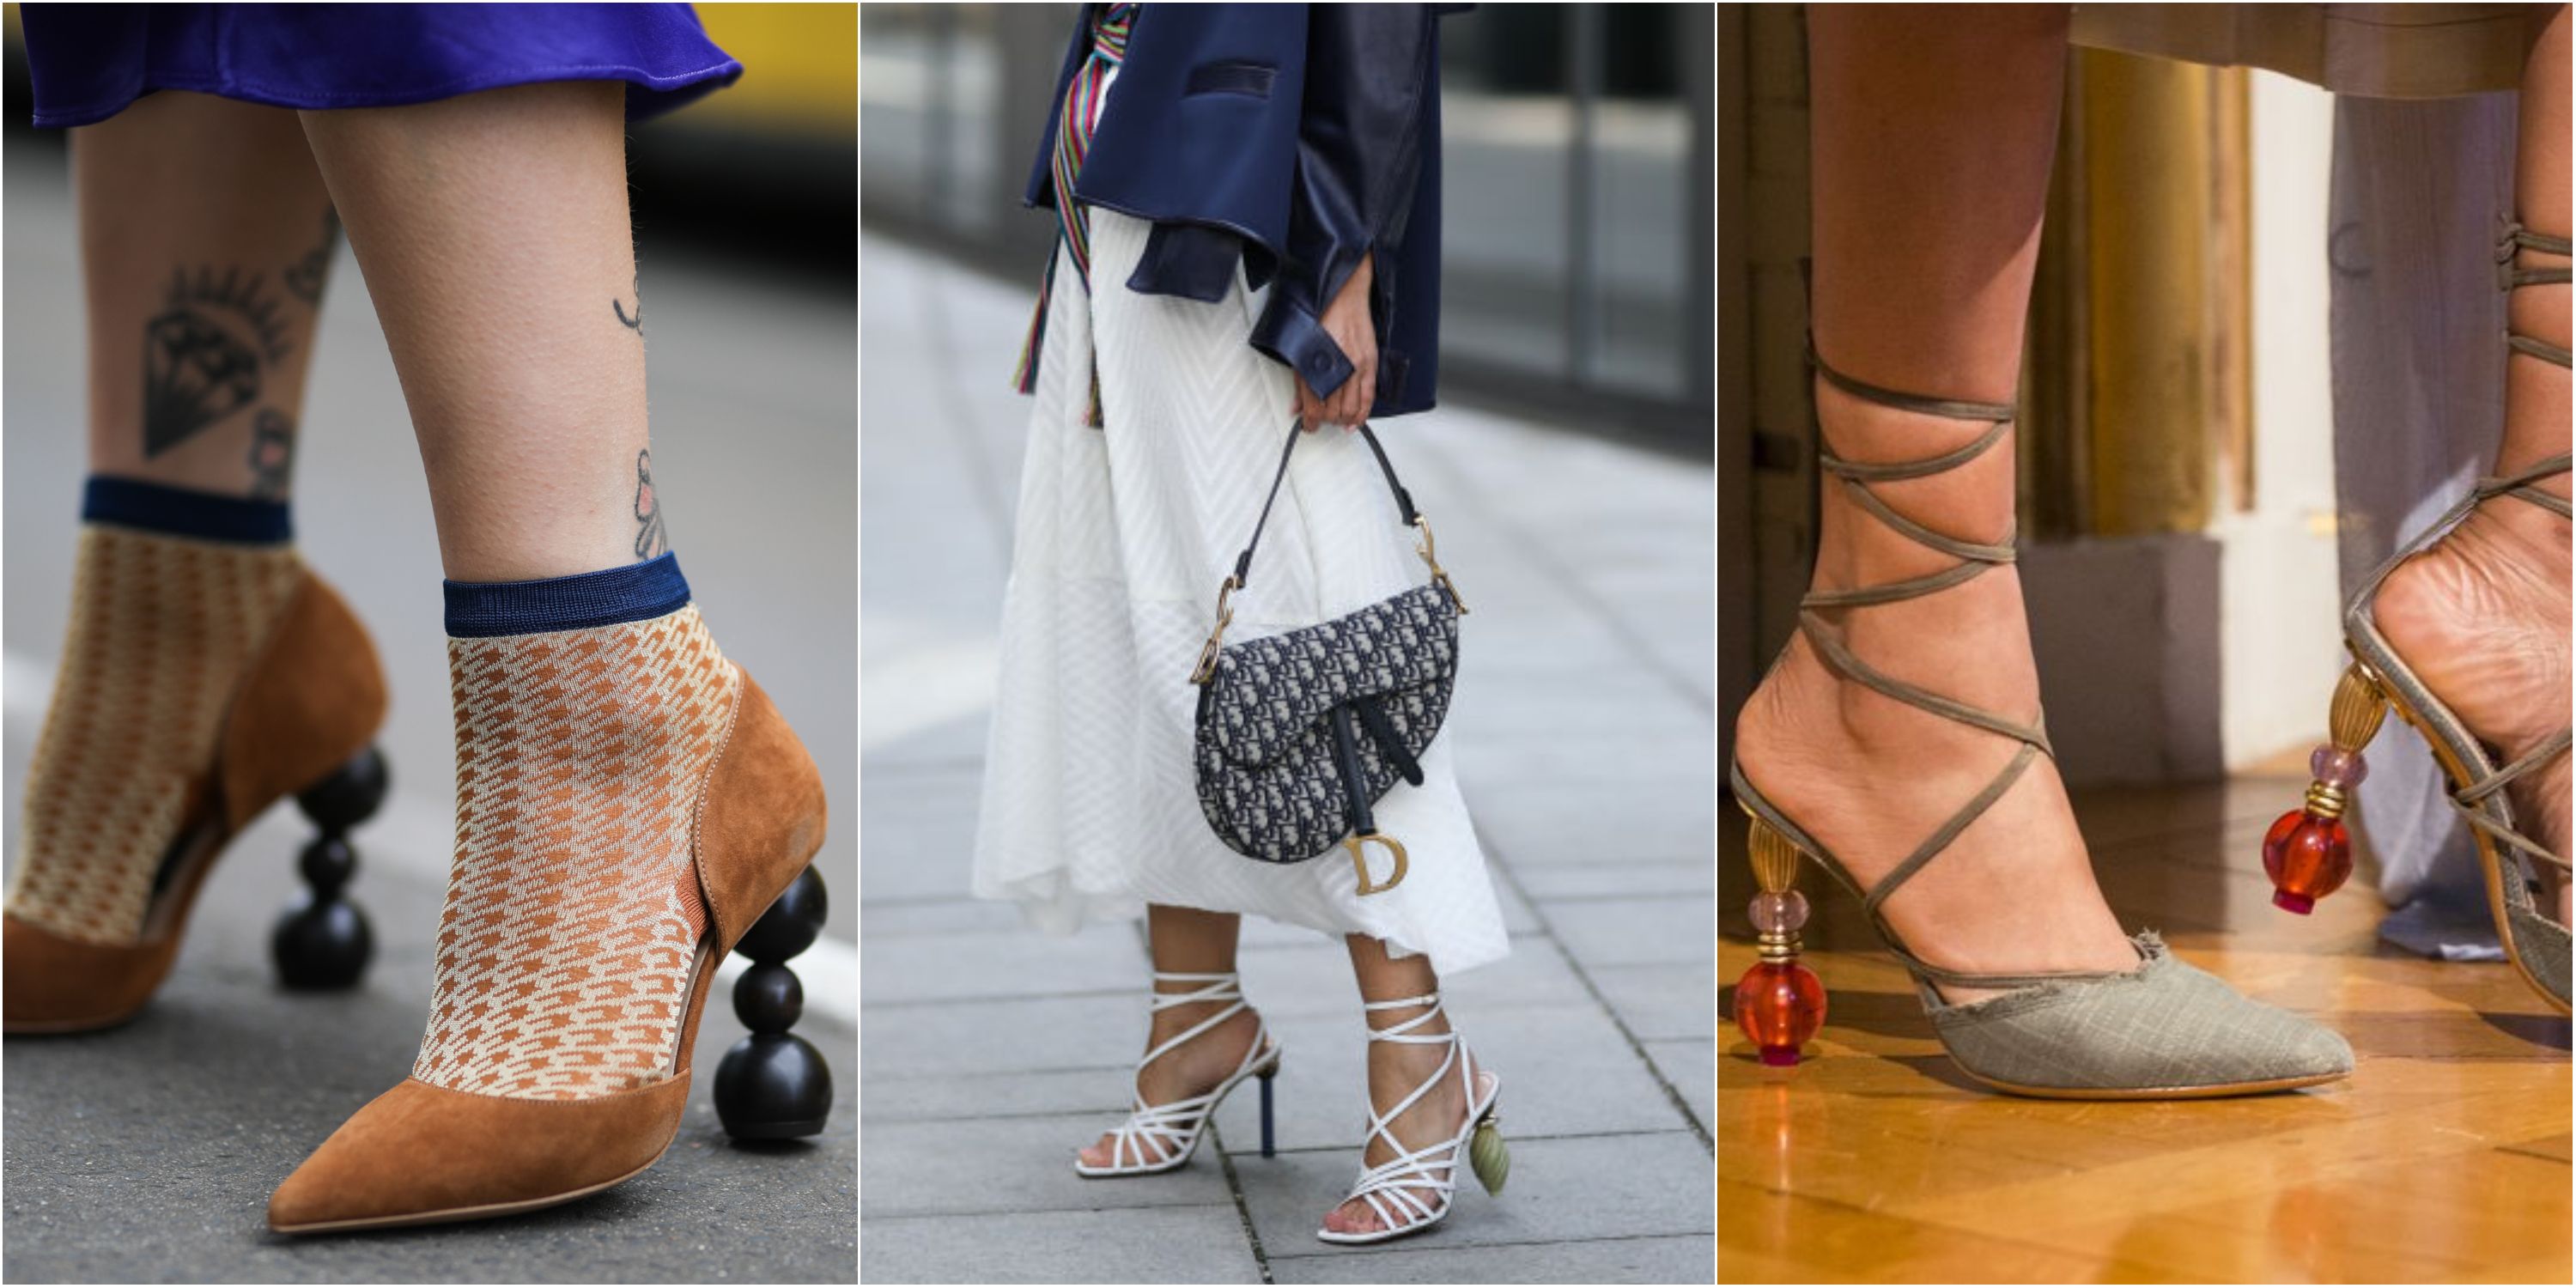 Zapatos geométricos, la tendencia 'joya' que elevará todos tus básicos - Tacones formas geométricas, la tendencia pisa fuerte